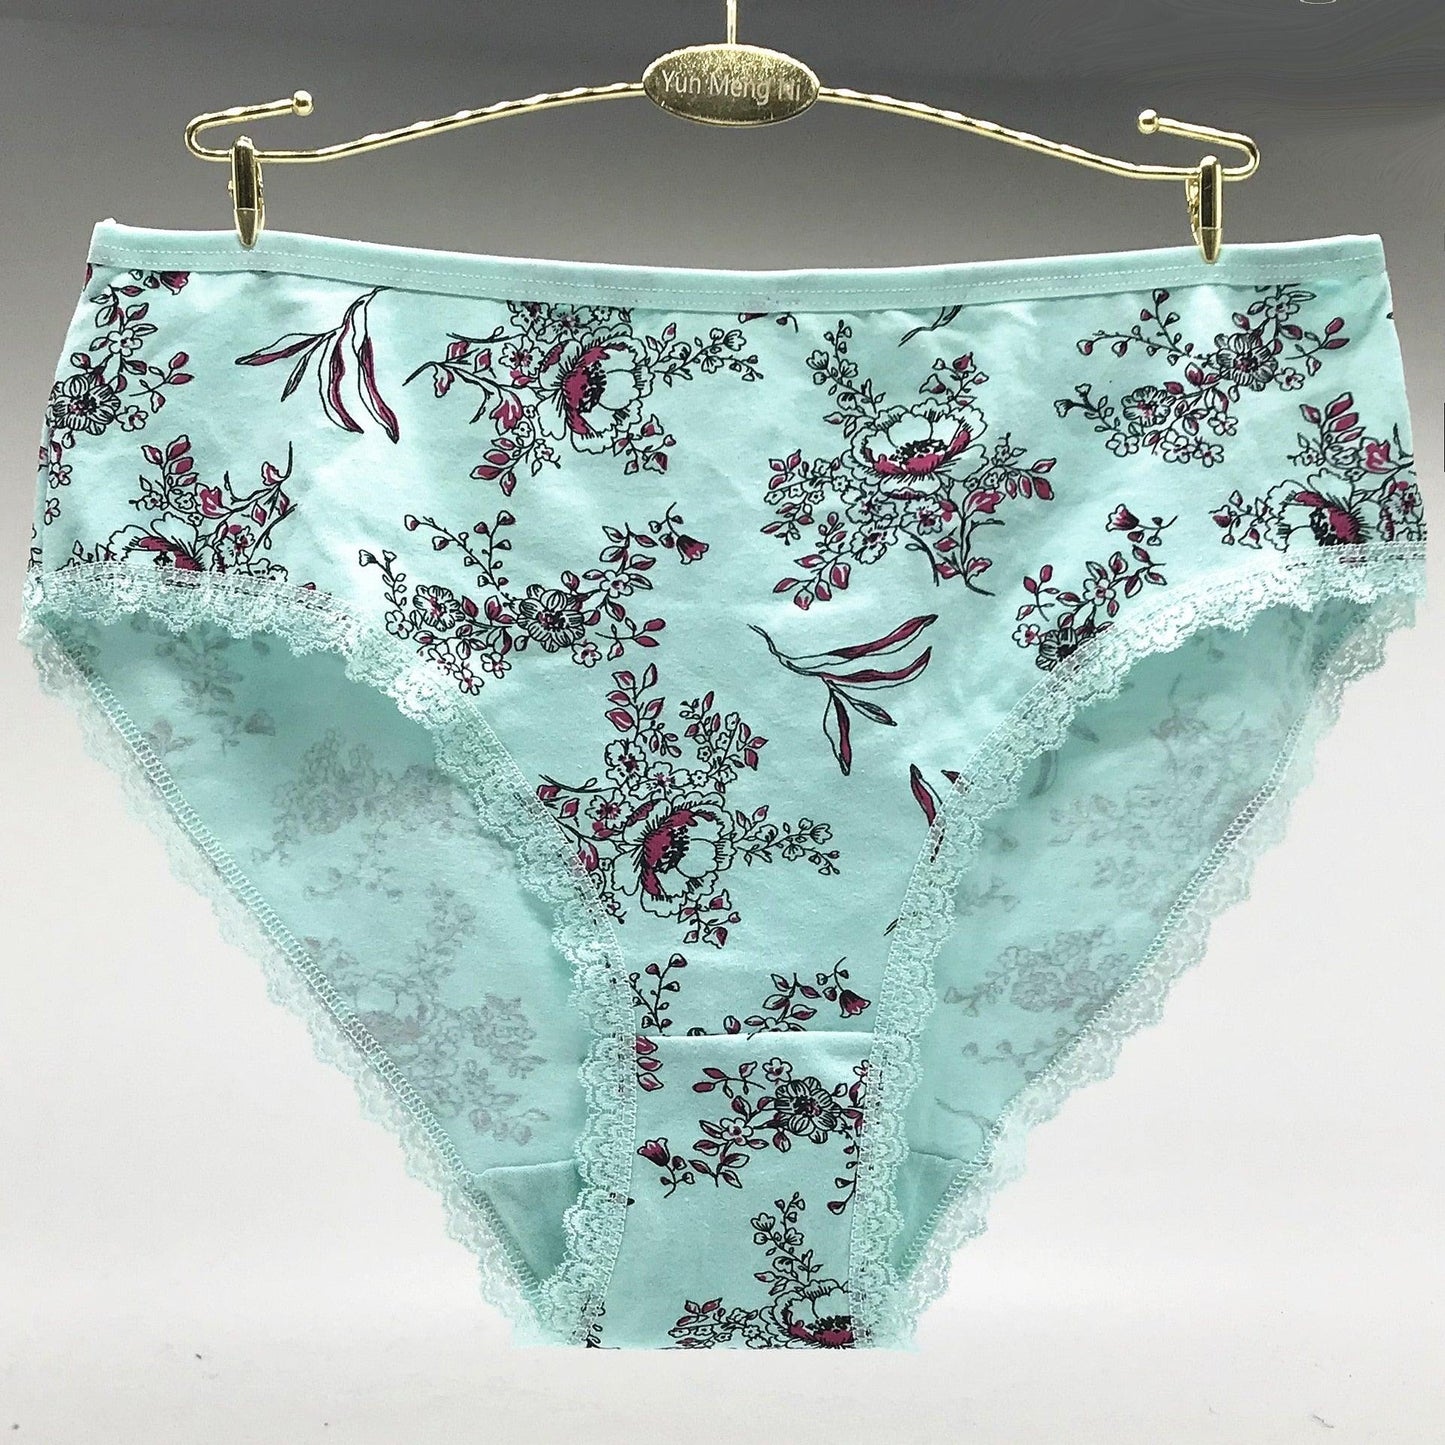 Trending 12 pcs / lot - 6 Color Women's Underwear - Big Size Breathable Soft Panties (TSP3)(TSP1)